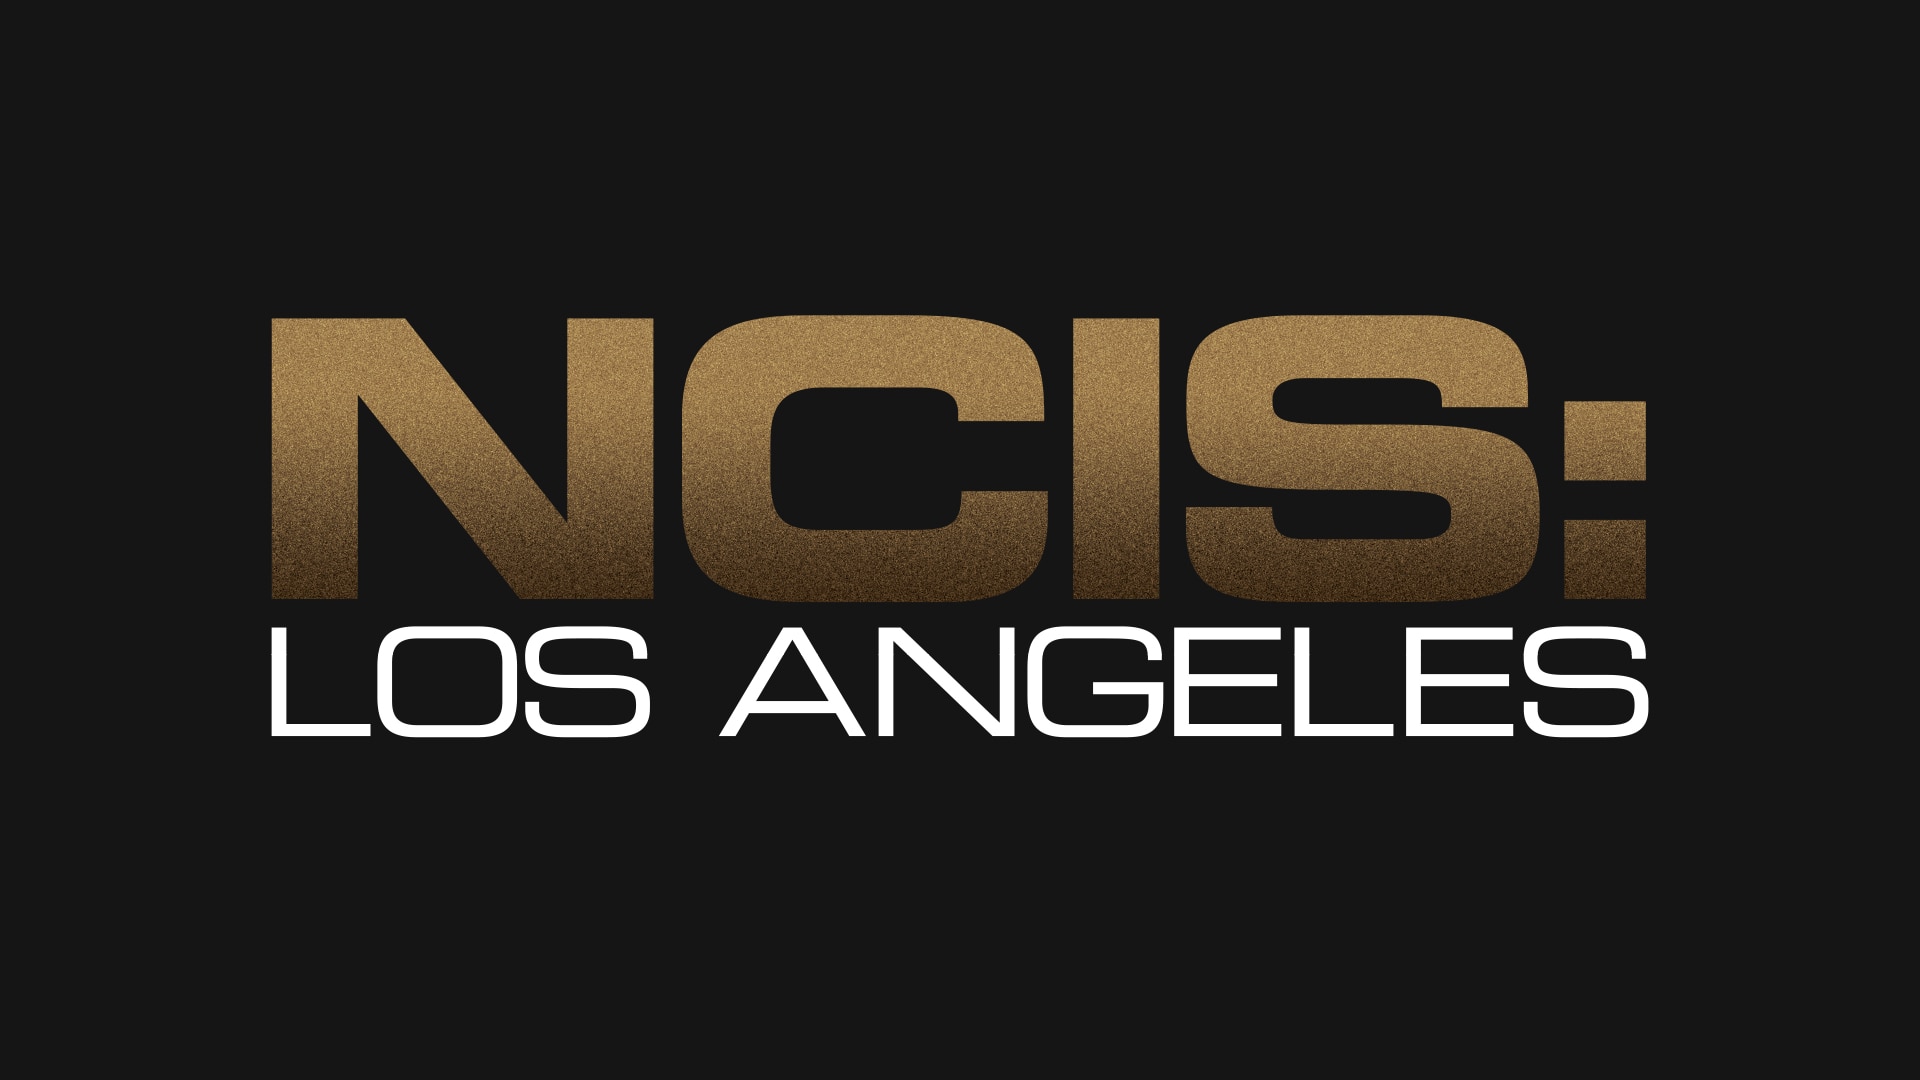 Лост анджелес текст френдли таг. Marciano los Angeles логотип. Наклейка (стикер) NCIS.